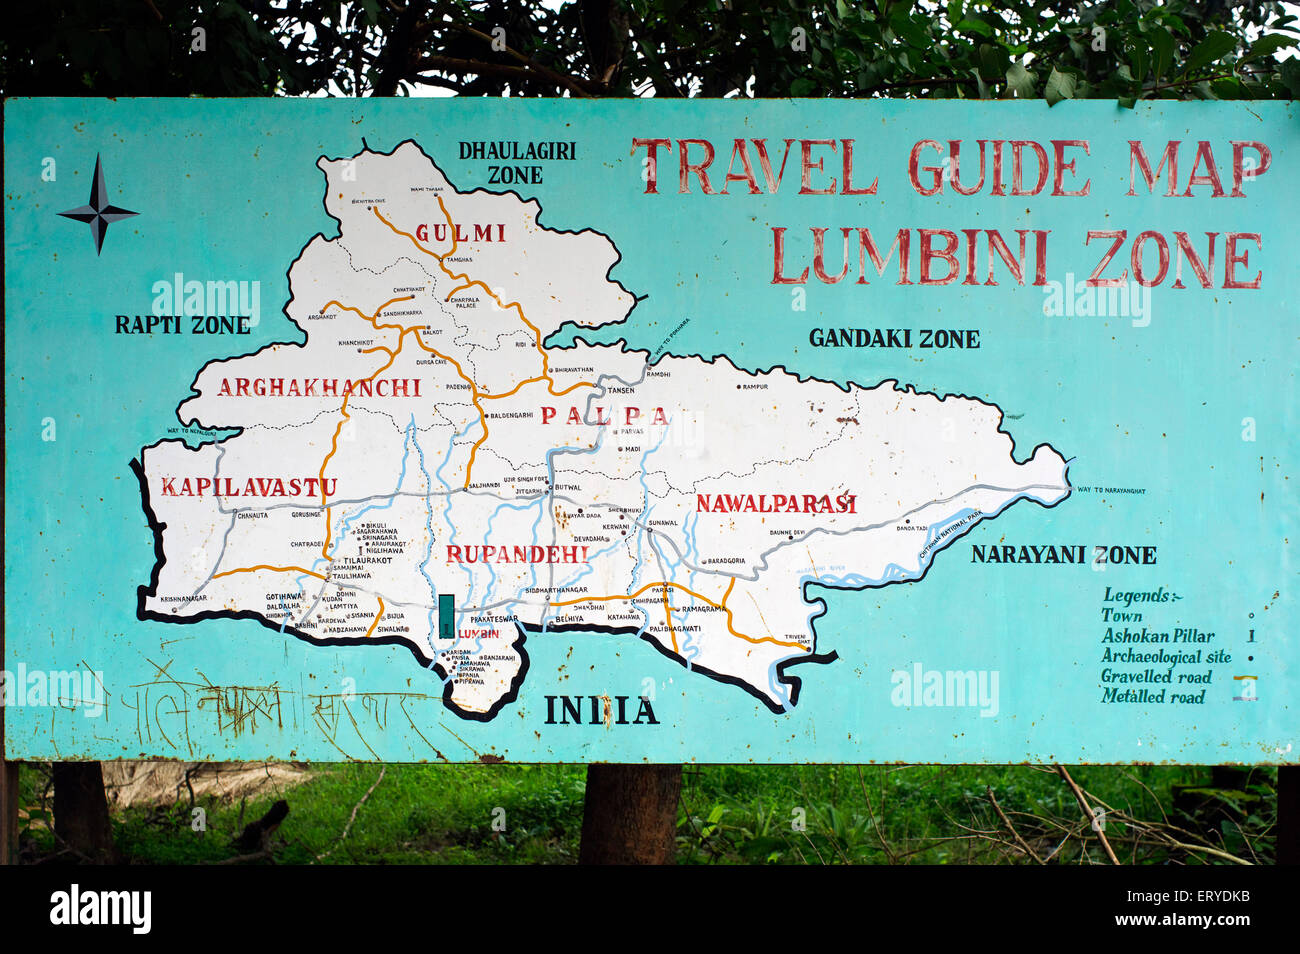 Buddhist pilgrimage travel guide map ; Lumbini Zone ; Nepal , asia Stock Photo